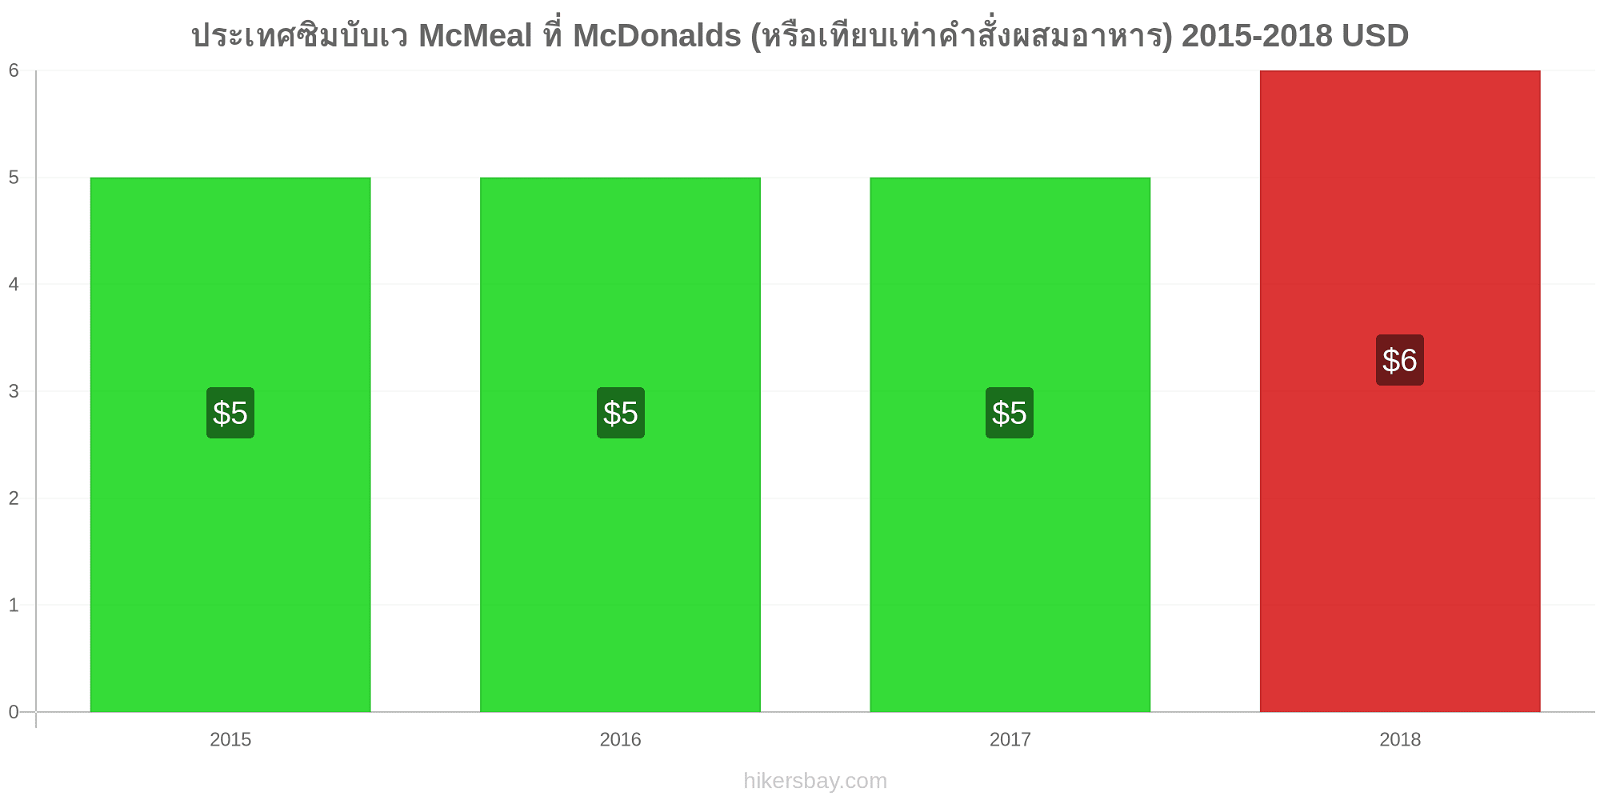 ประเทศซิมบับเว การเปลี่ยนแปลงราคา McMeal ที่ McDonalds (หรือเทียบเท่าคำสั่งผสมอาหาร) hikersbay.com